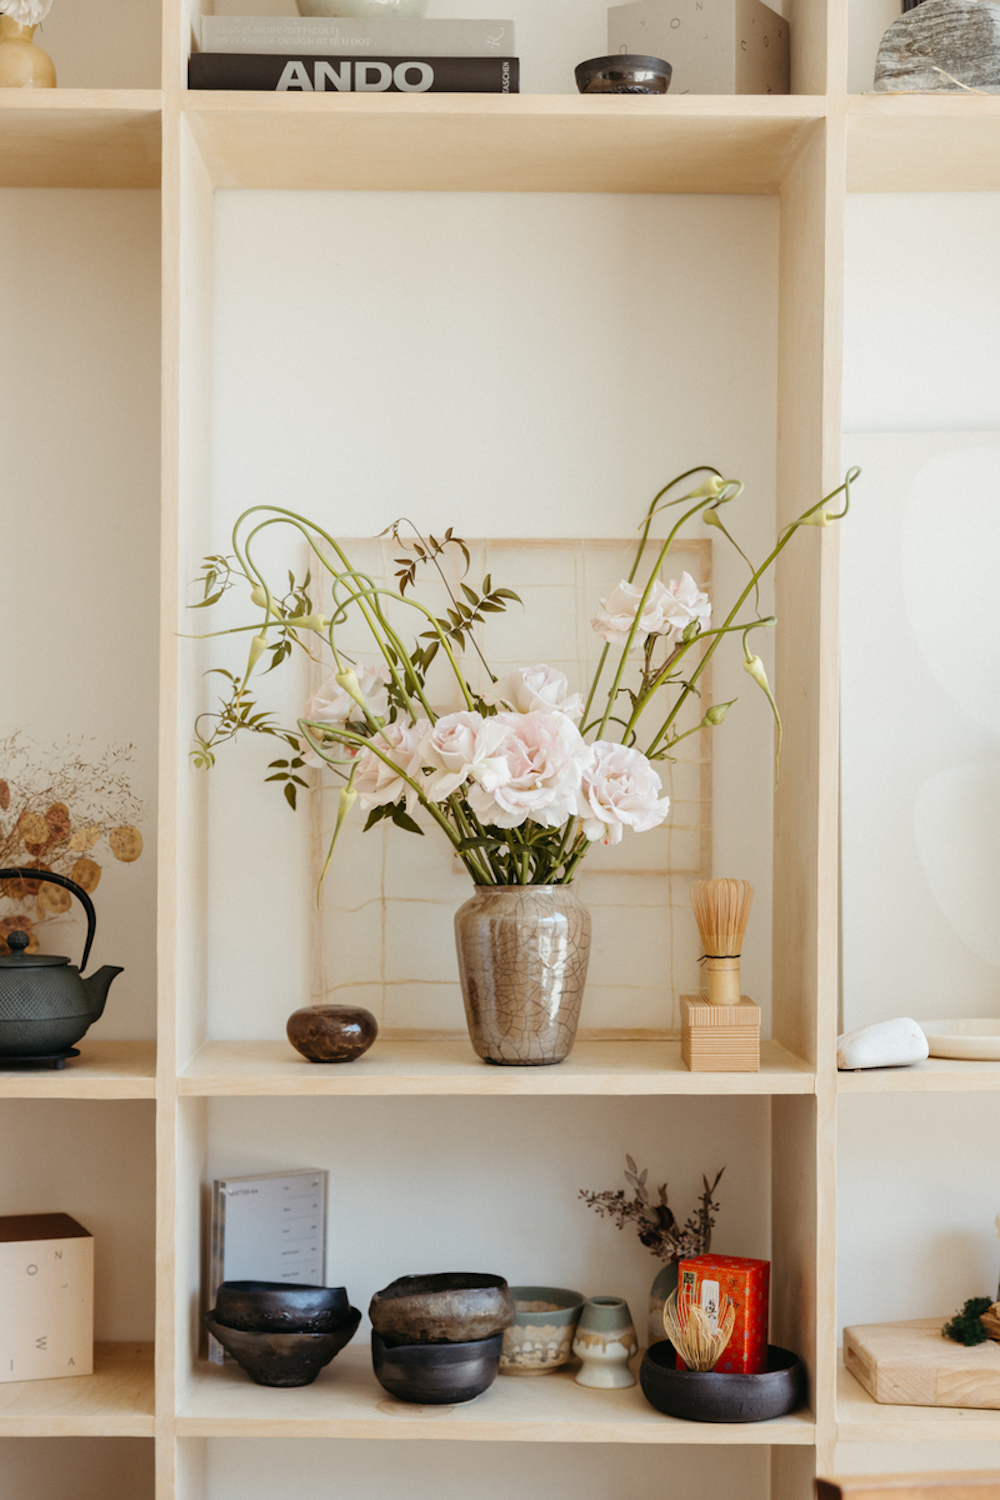 Shelf with flowers.